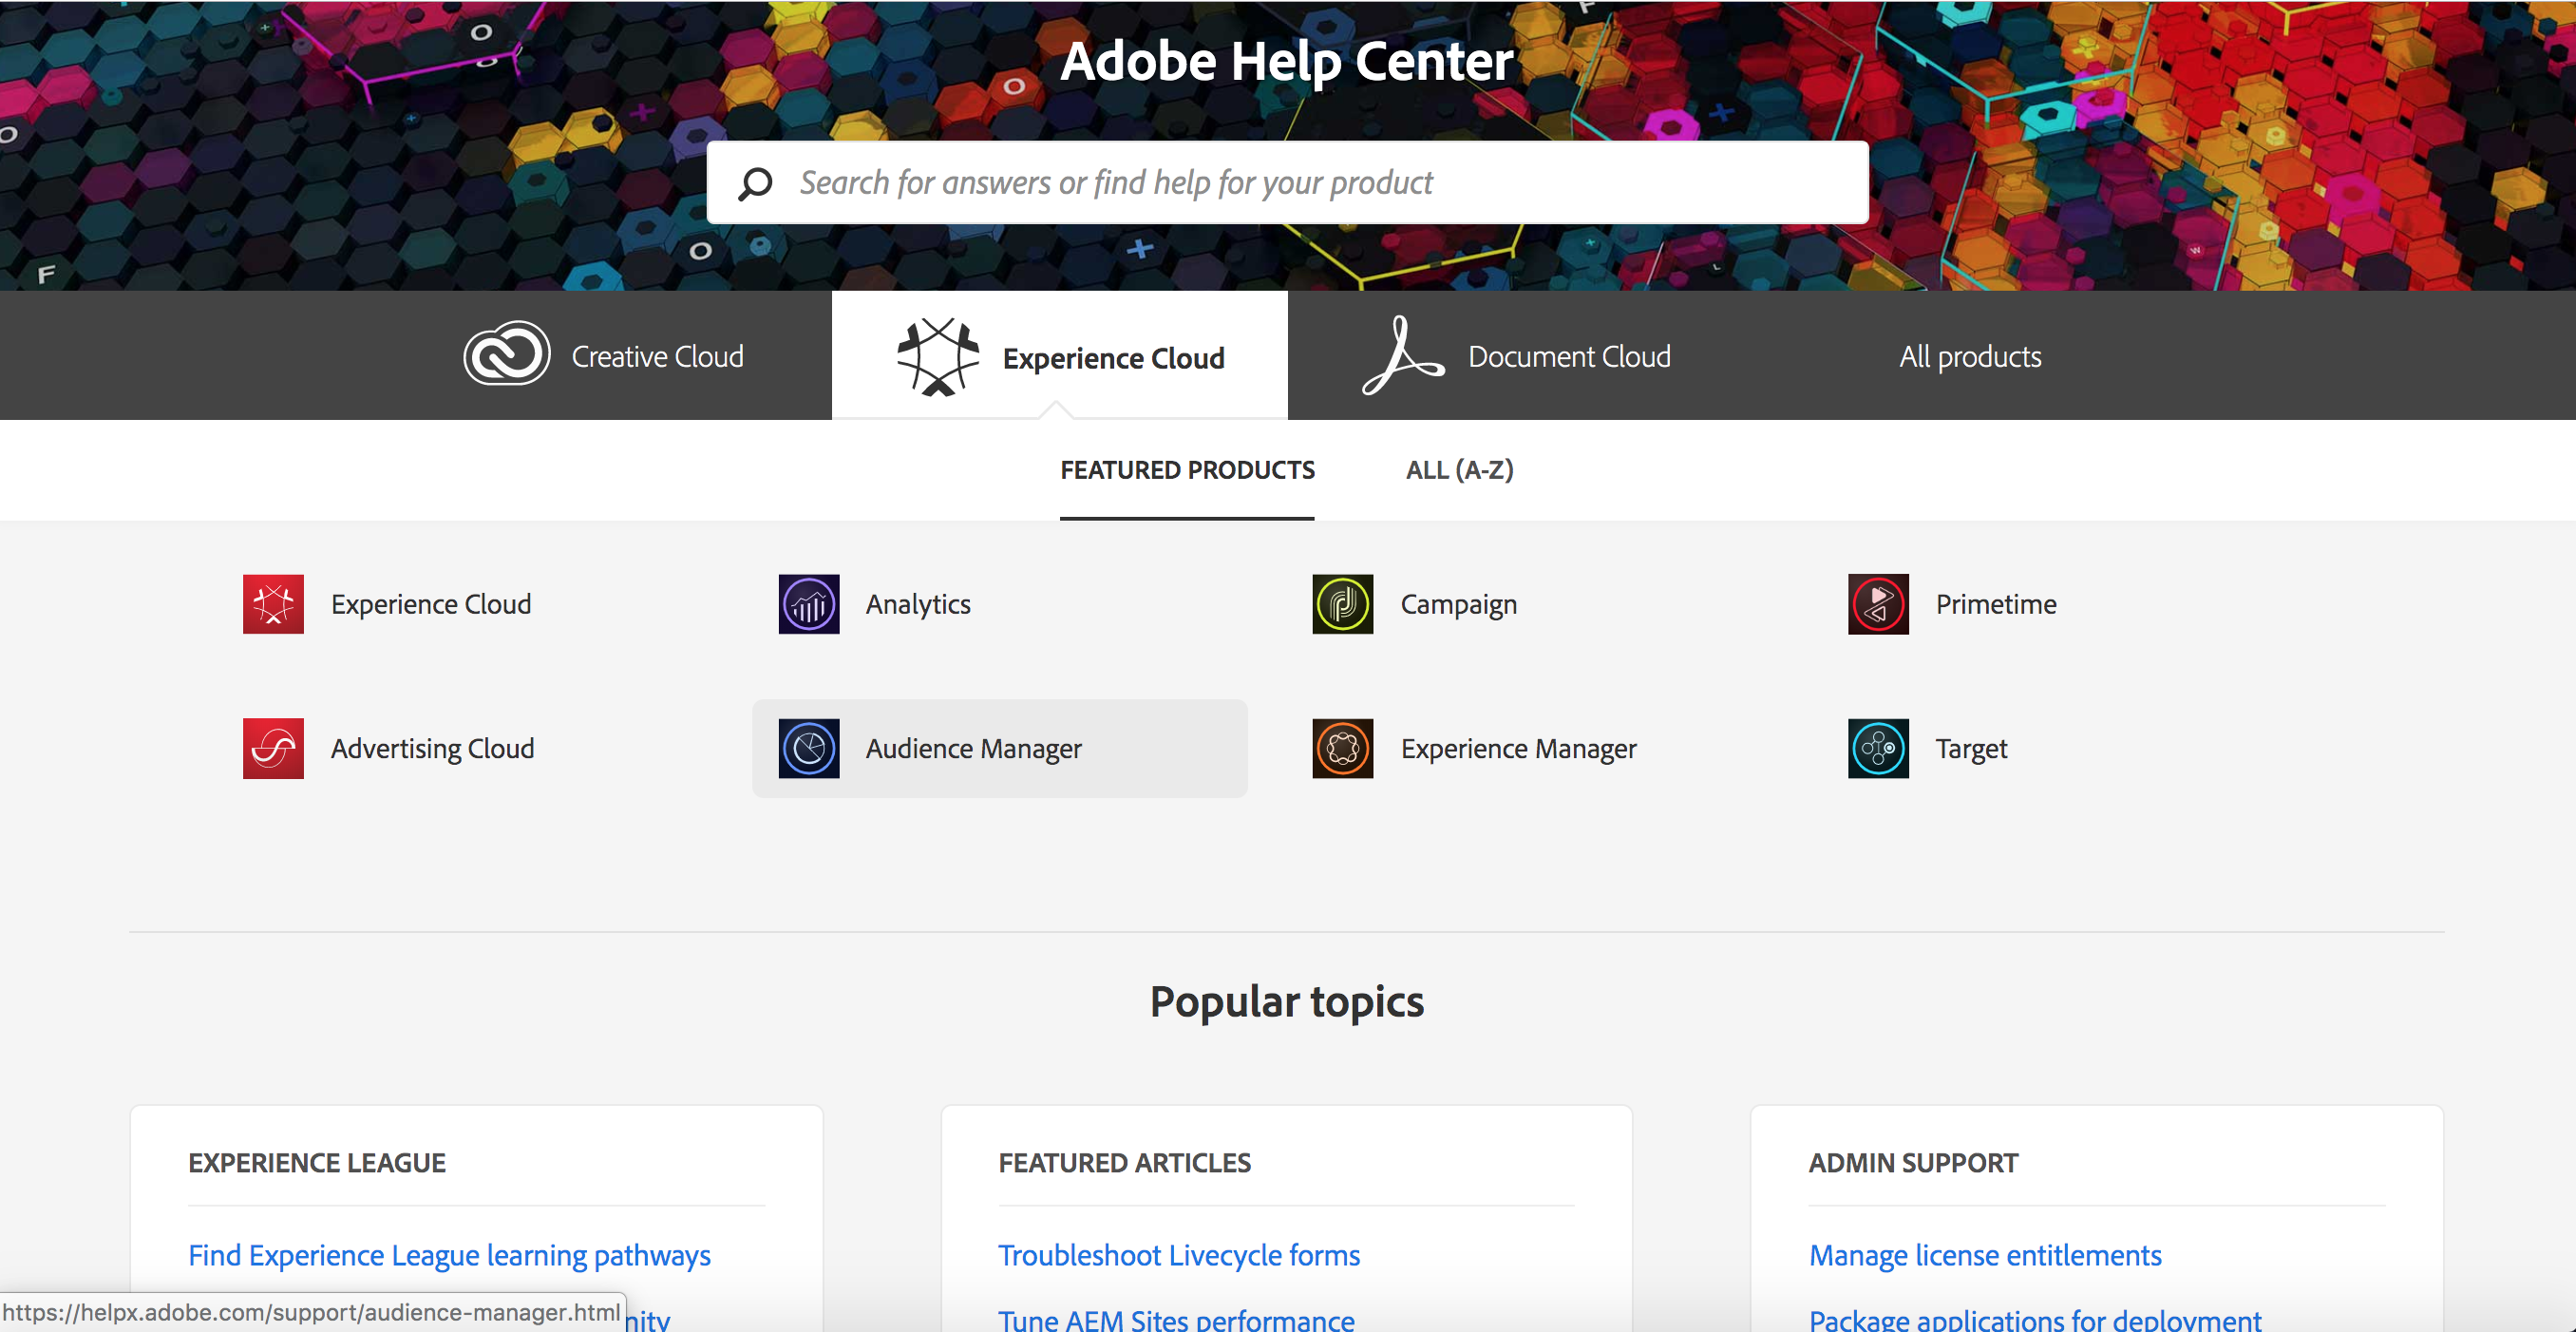 Adobe Help Center